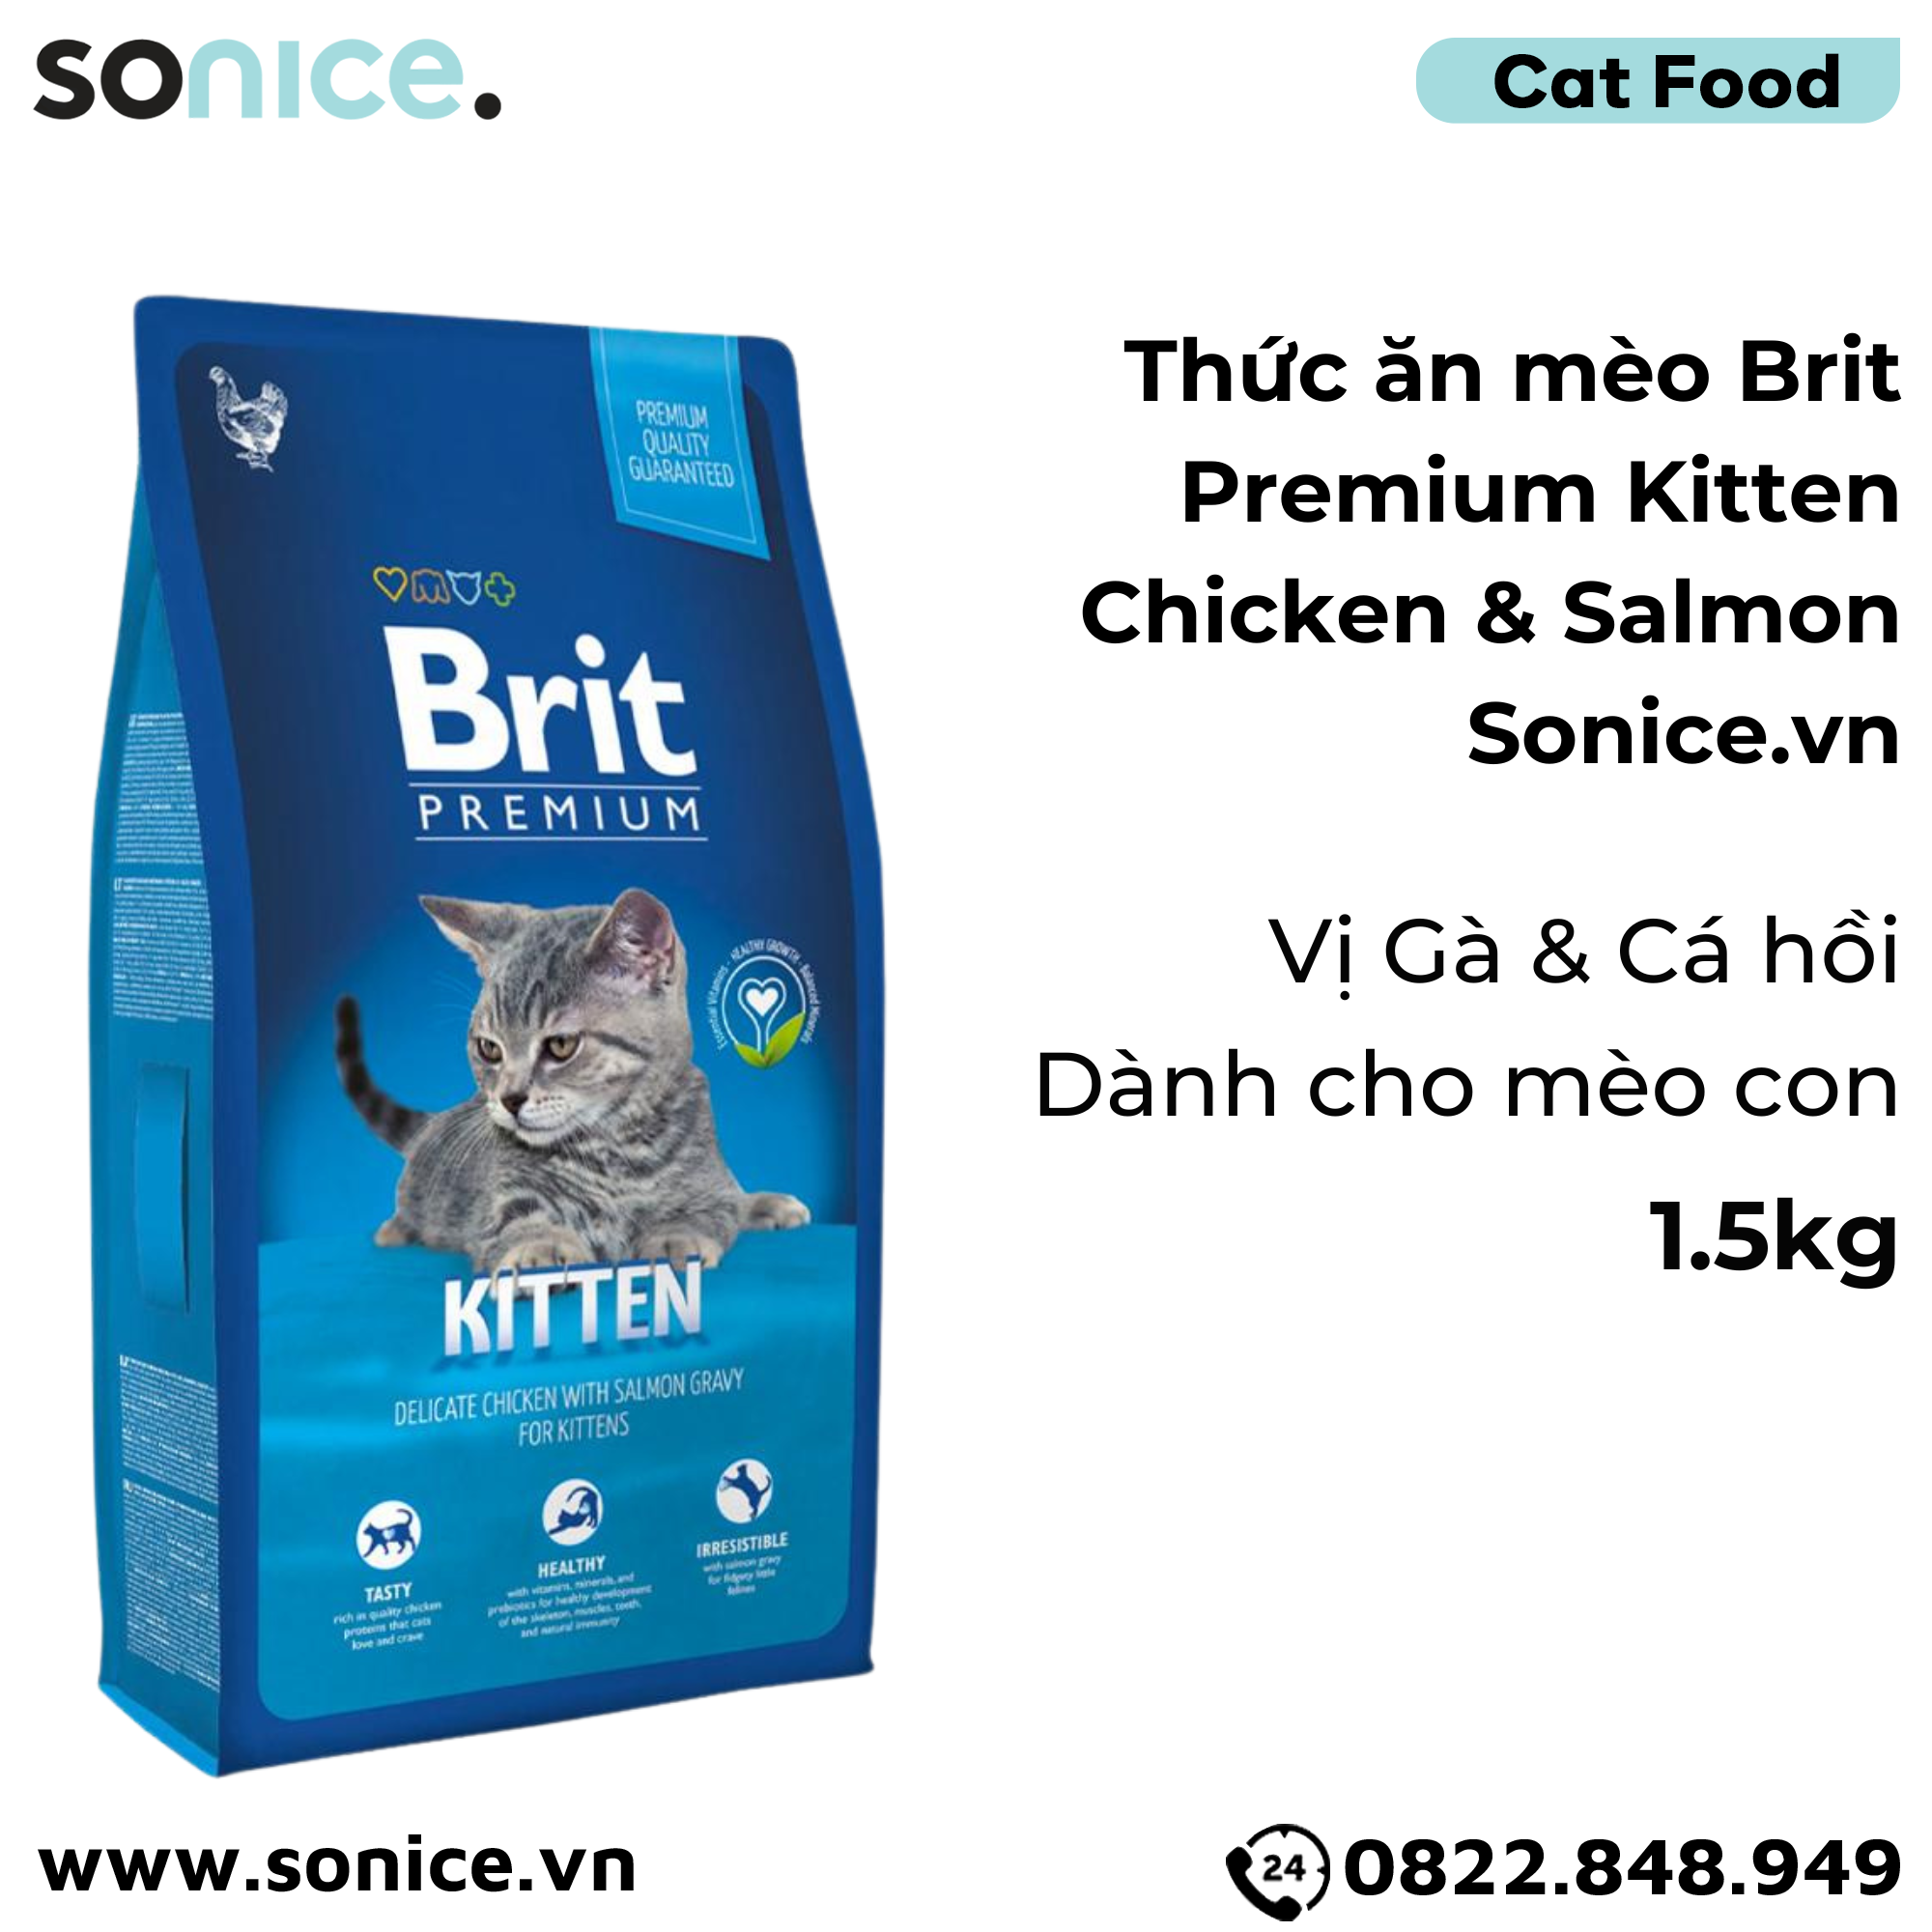  Thức ăn mèo Brit Premium Kitten Chicken & Salmon 1.5kg - Dành cho mèo con vị Gà và Cá hồi SONICE. 